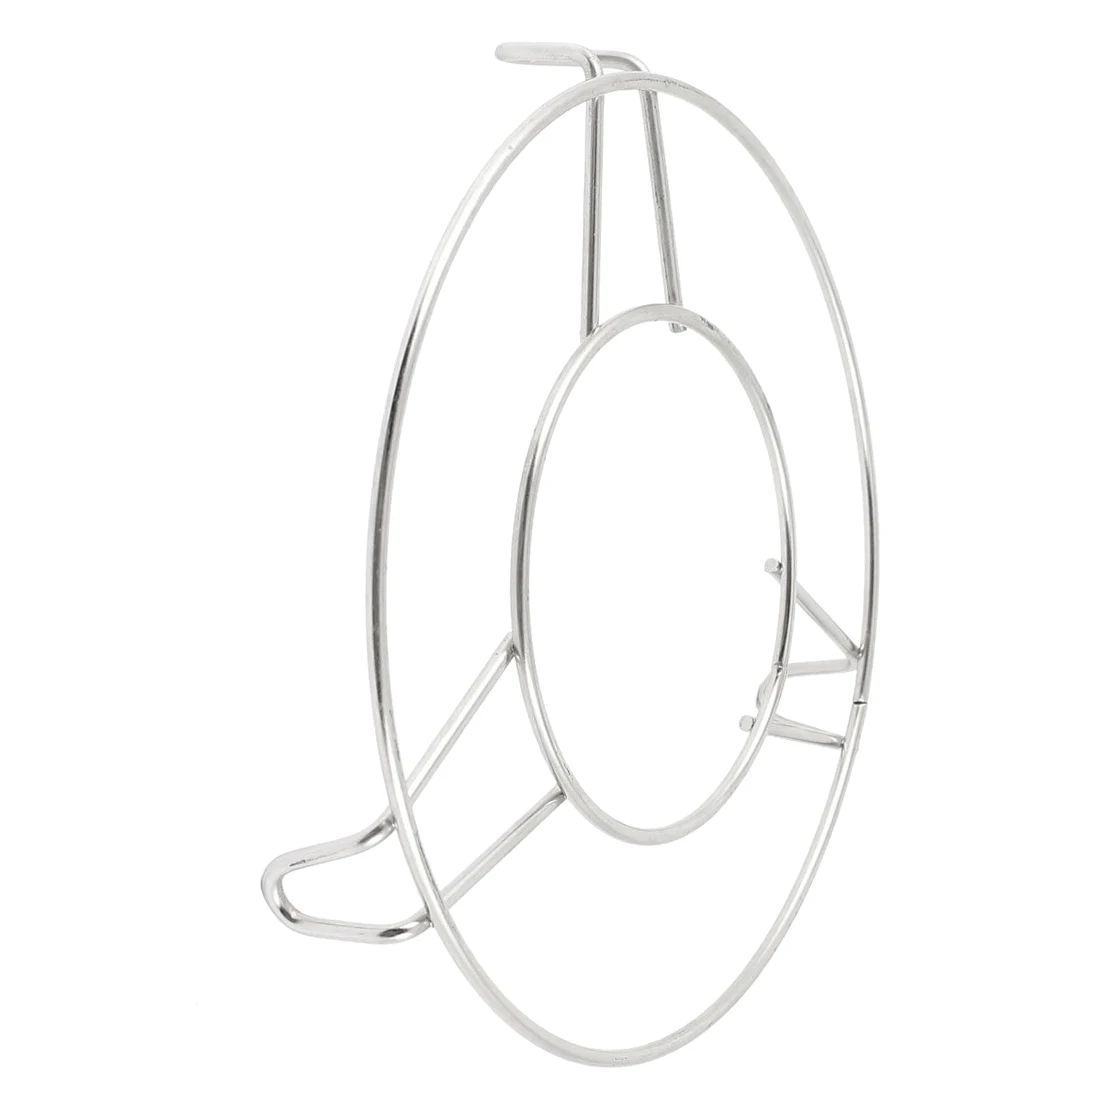 FJS-круглая Пароварка из нержавеющей стали, Паровая стойка для кухни, 6 дюймов, диаметр